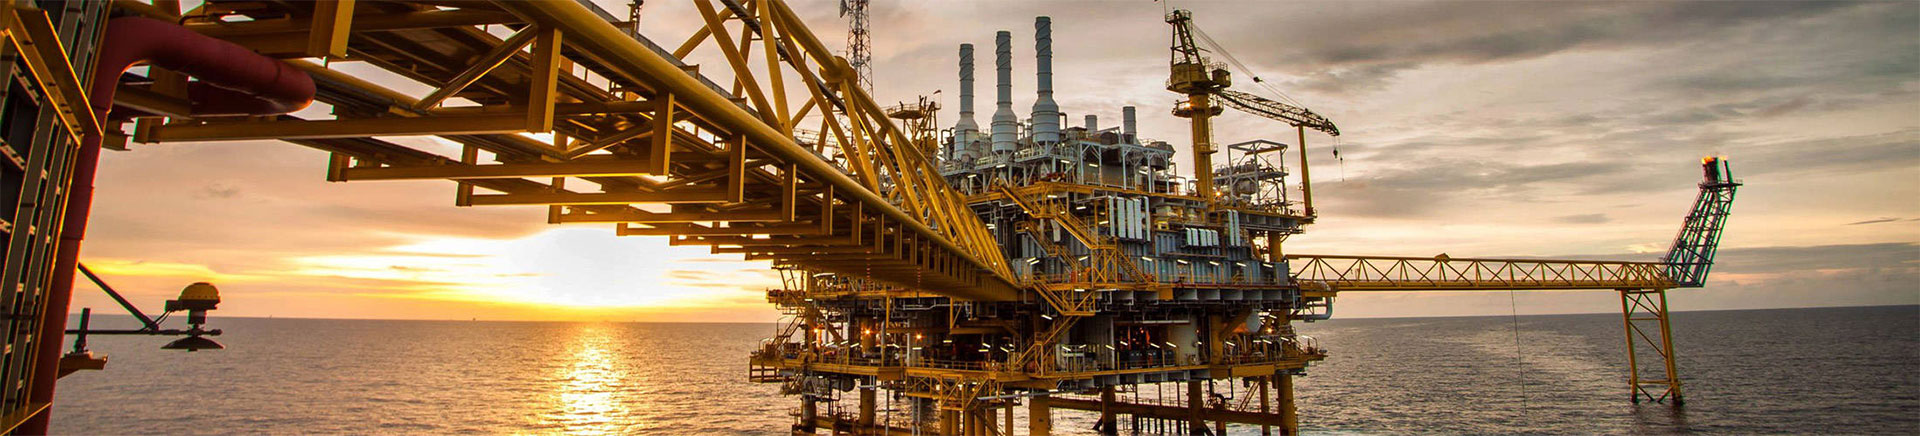 Das Unternehmen nimmt an der iranischen Öl- und Gasausstellung teil